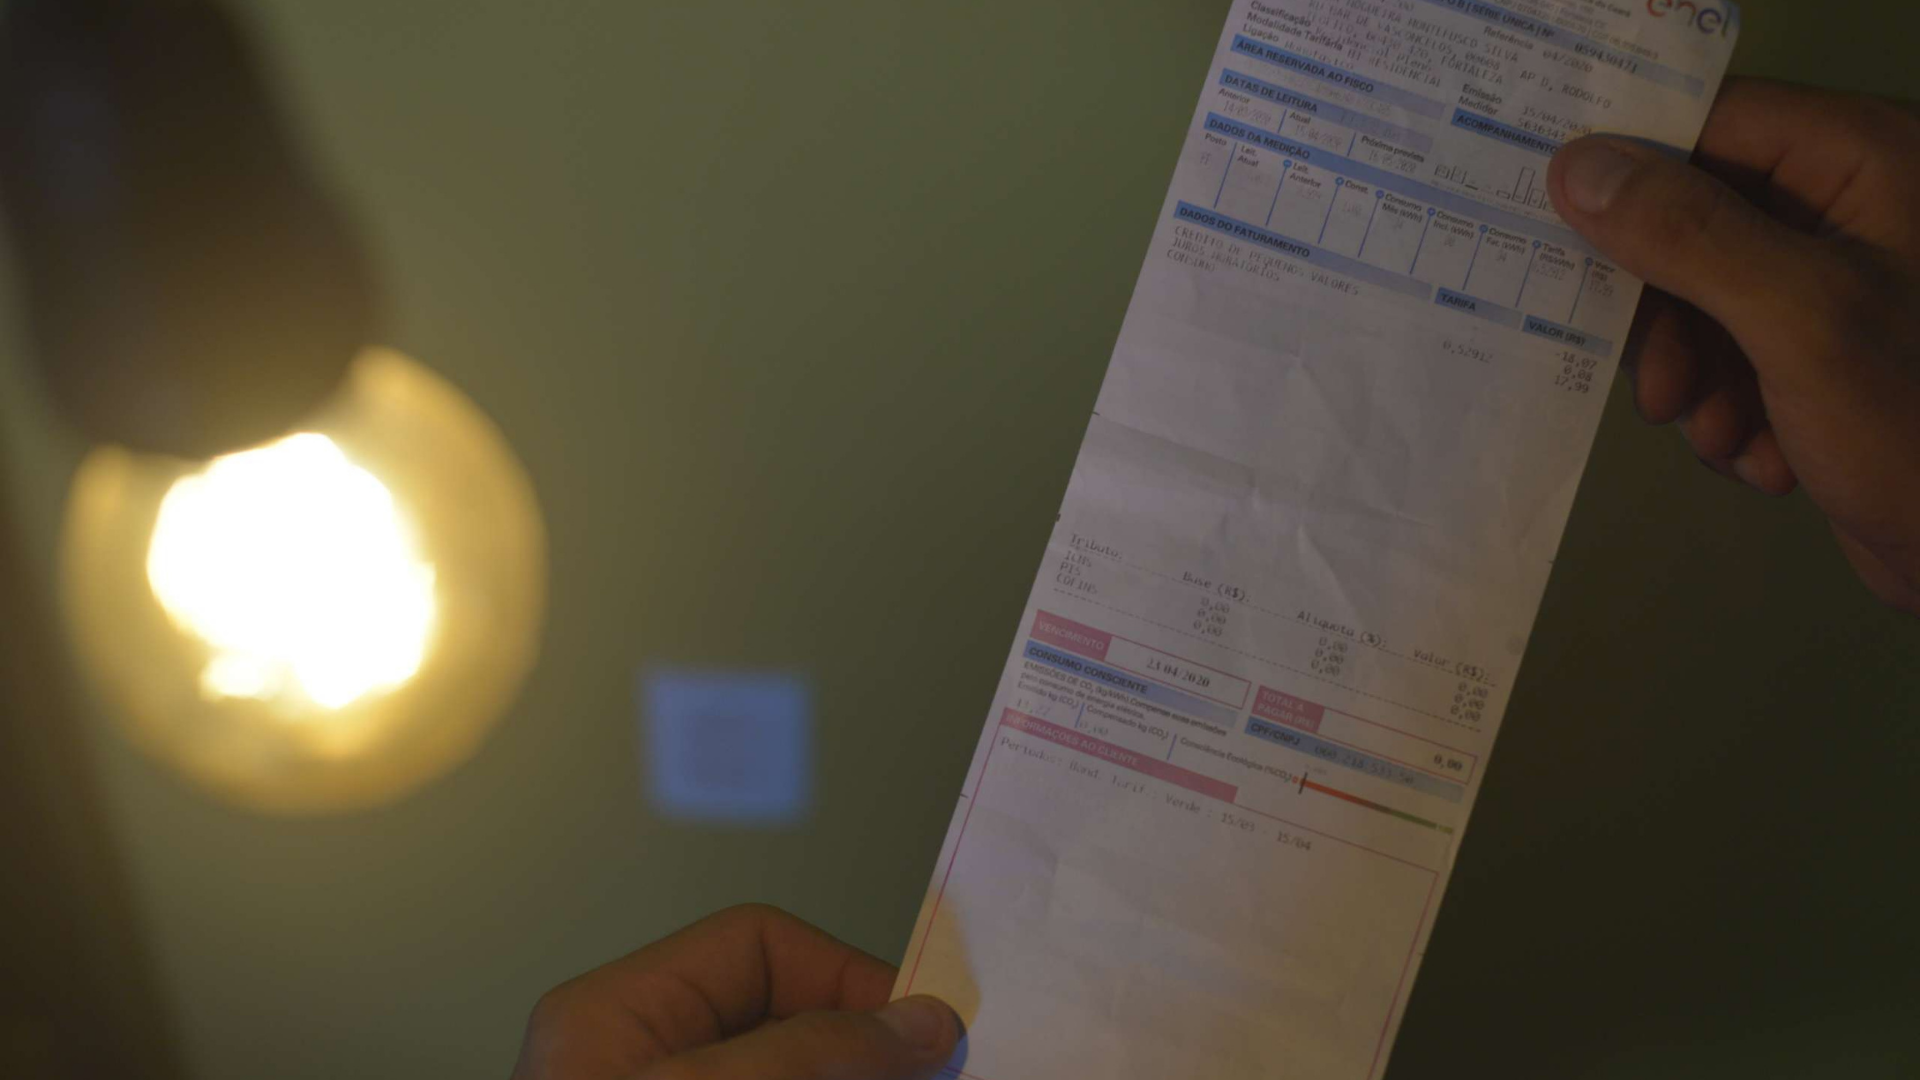 Taxa extra na conta de luz acaba e preços devem cair. Foto de um papel de uma conta de luz embaixo de uma lâmpada.